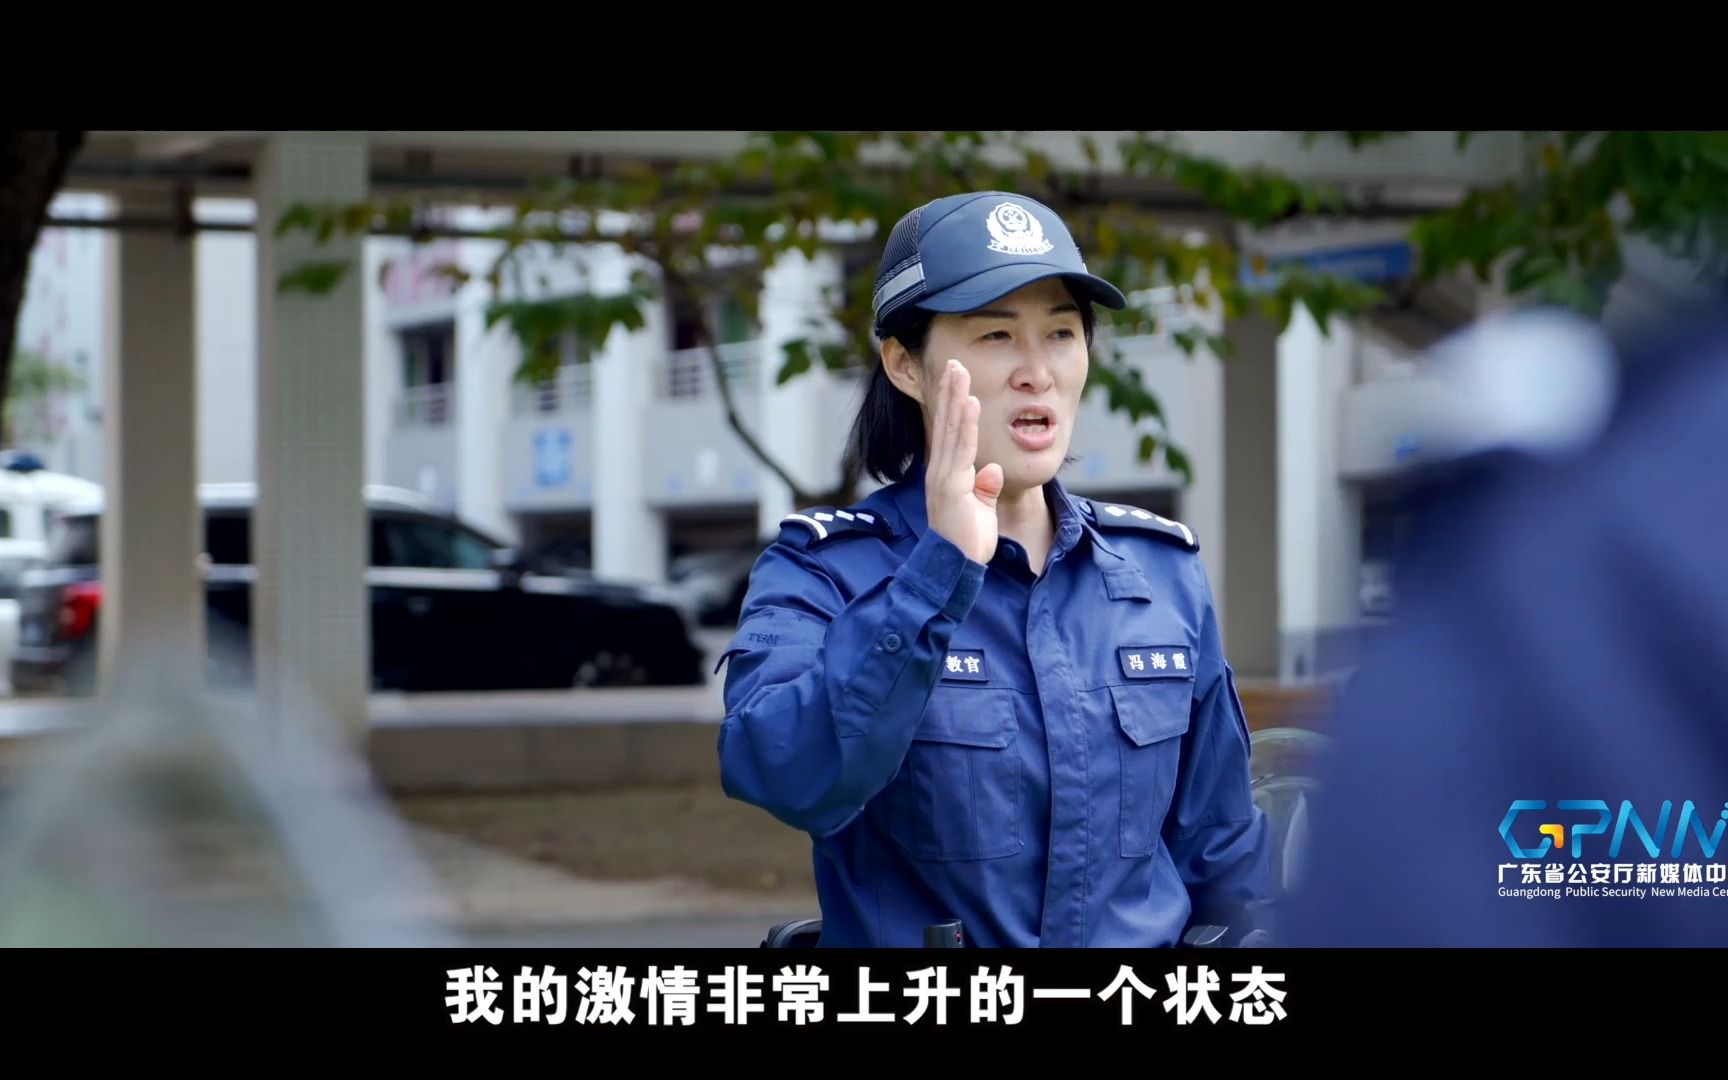 她力量丨从电影武打替身到特警教官，冯海霞越干越起劲